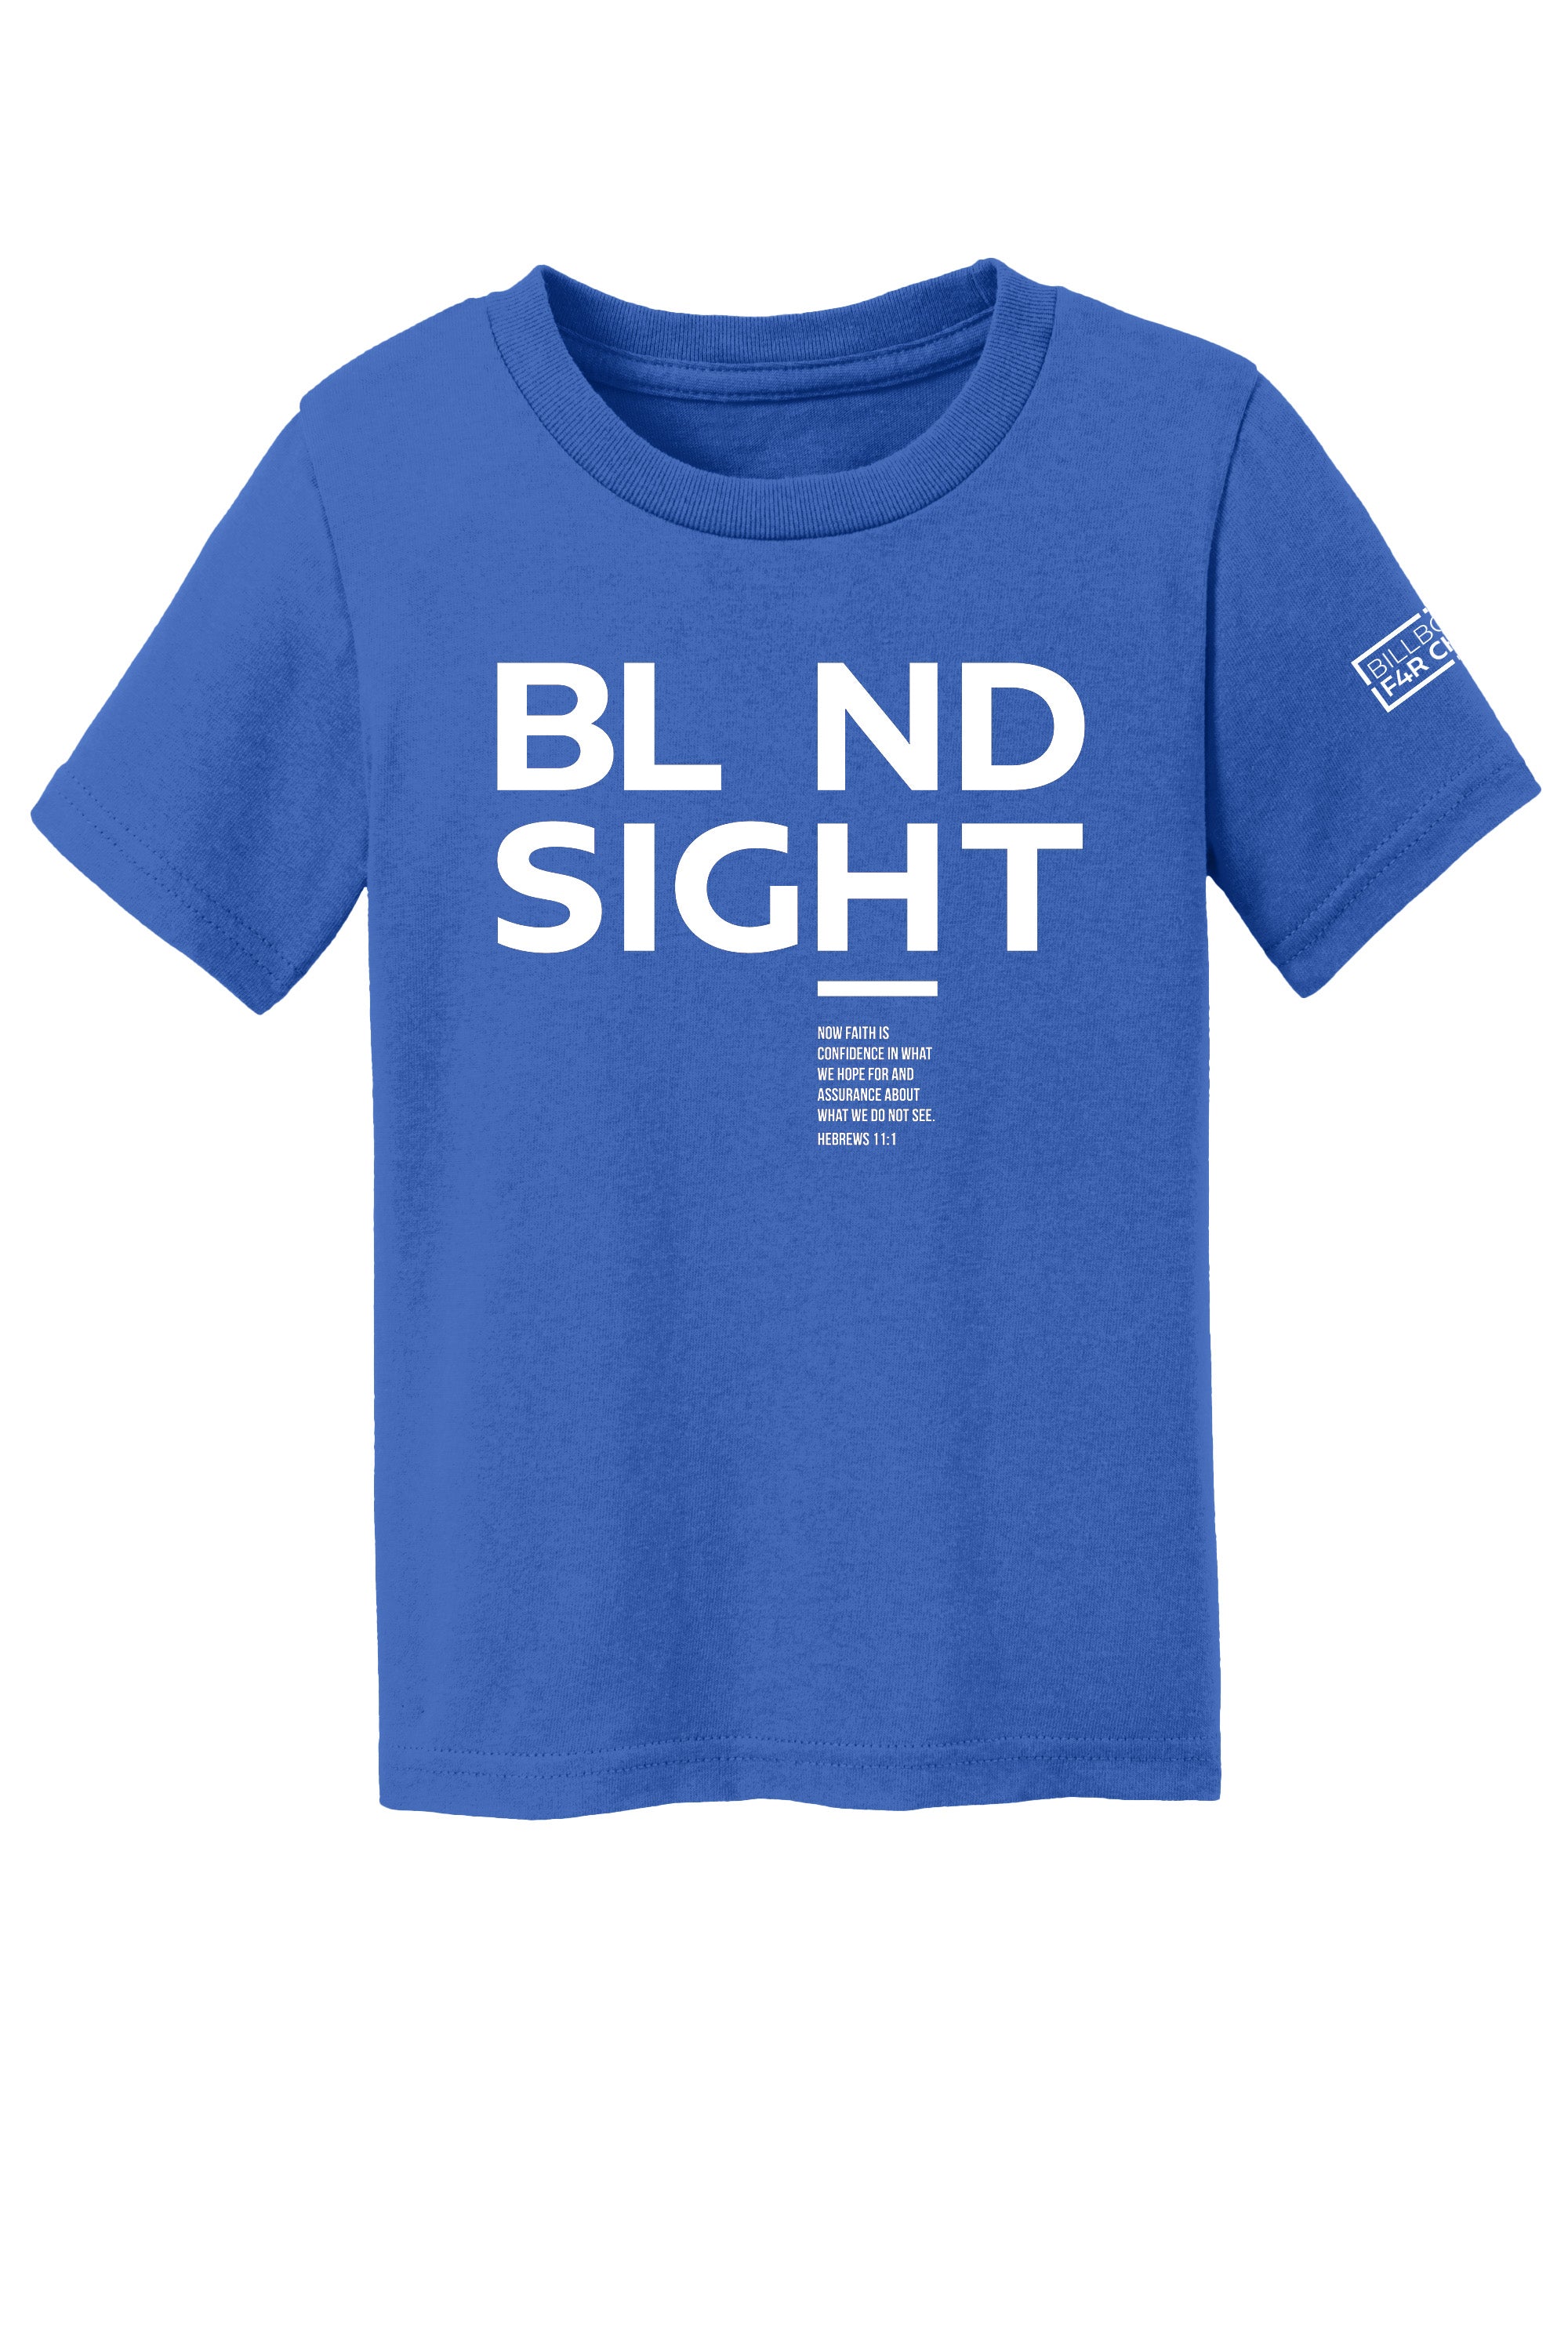 BL ND Sight 2 Toddler T-Shirt